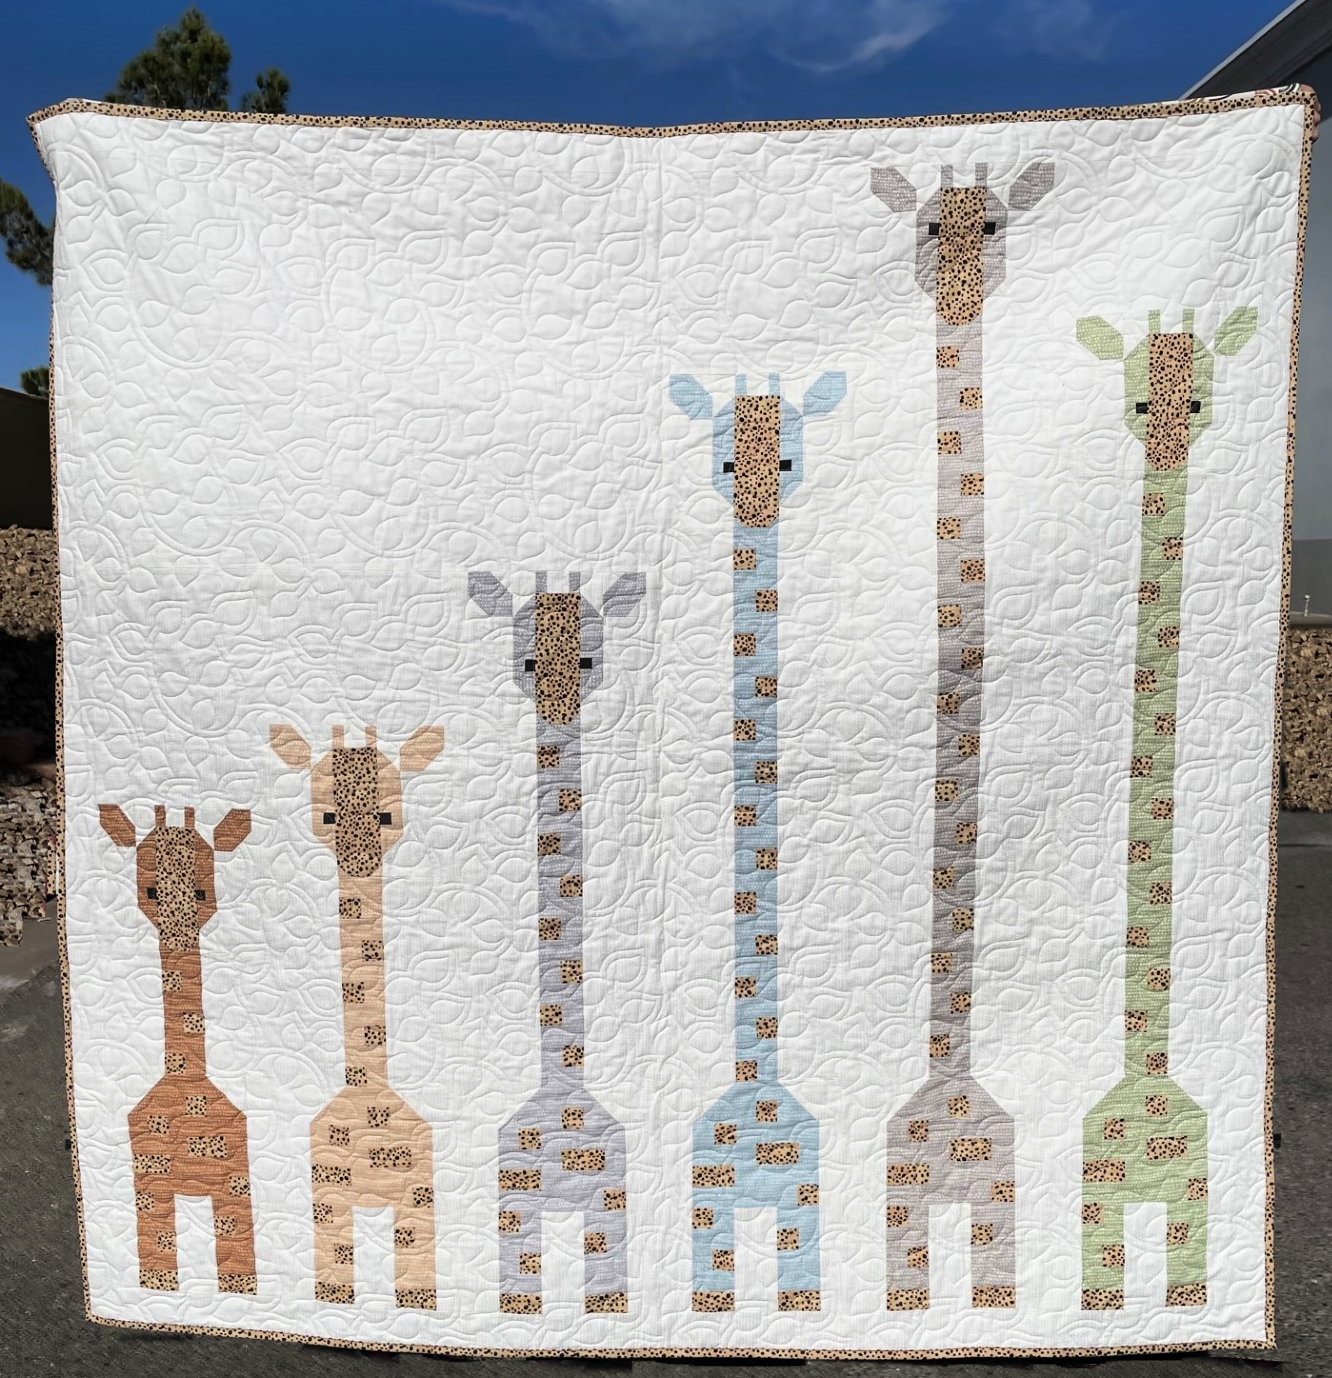 Giraffe's In A Row